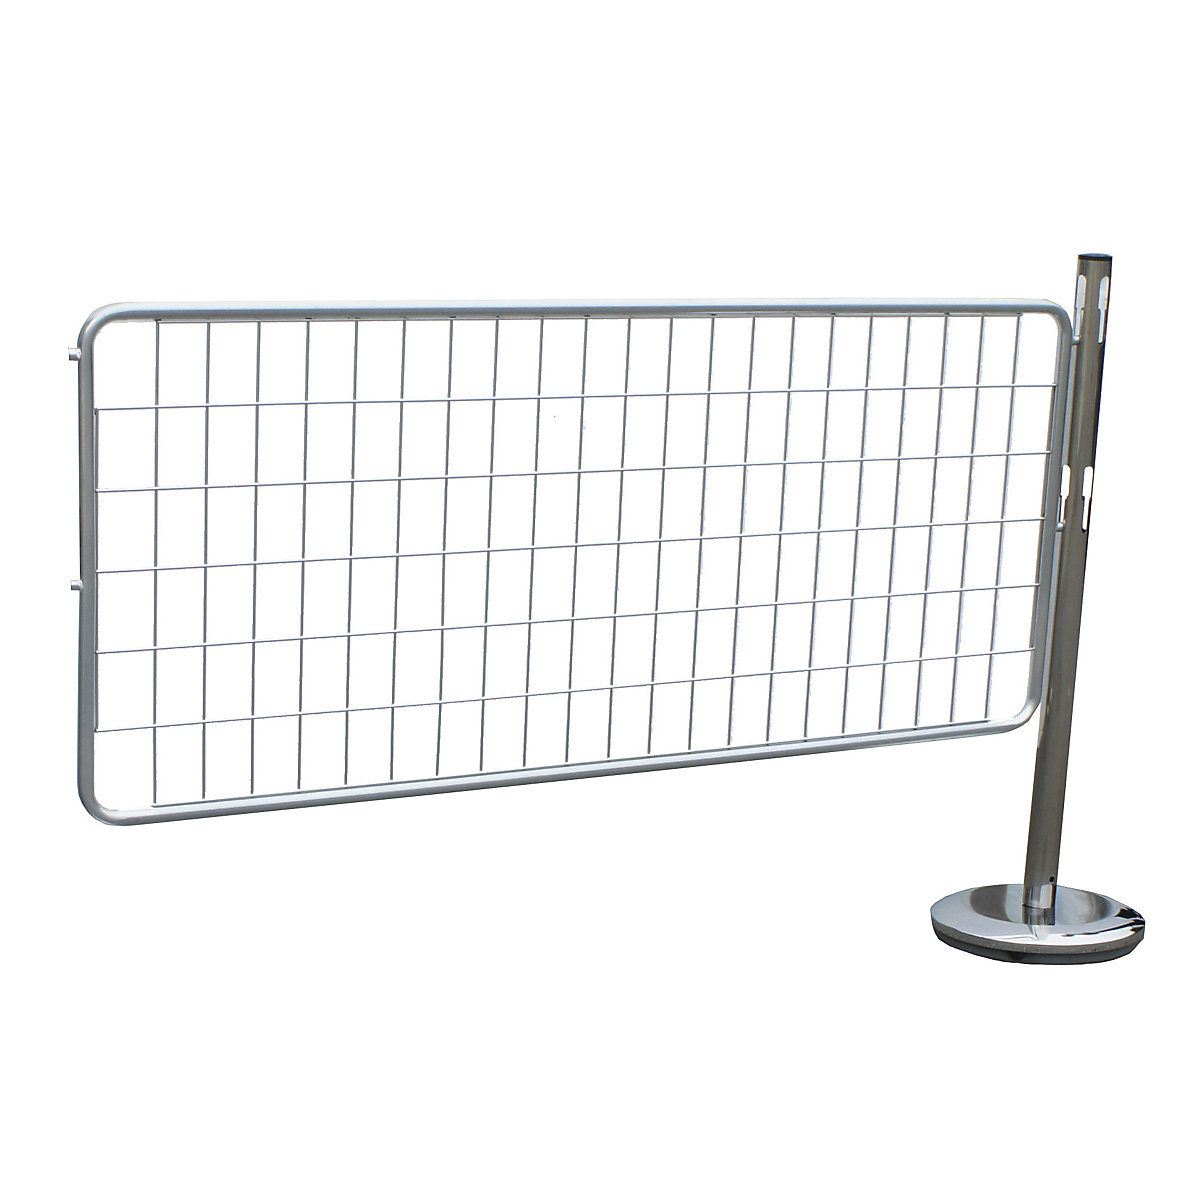 Juego de ampliación de postes barrera, con reja – VISO, 1 poste, 1 reja, galvanizado / cromado-2